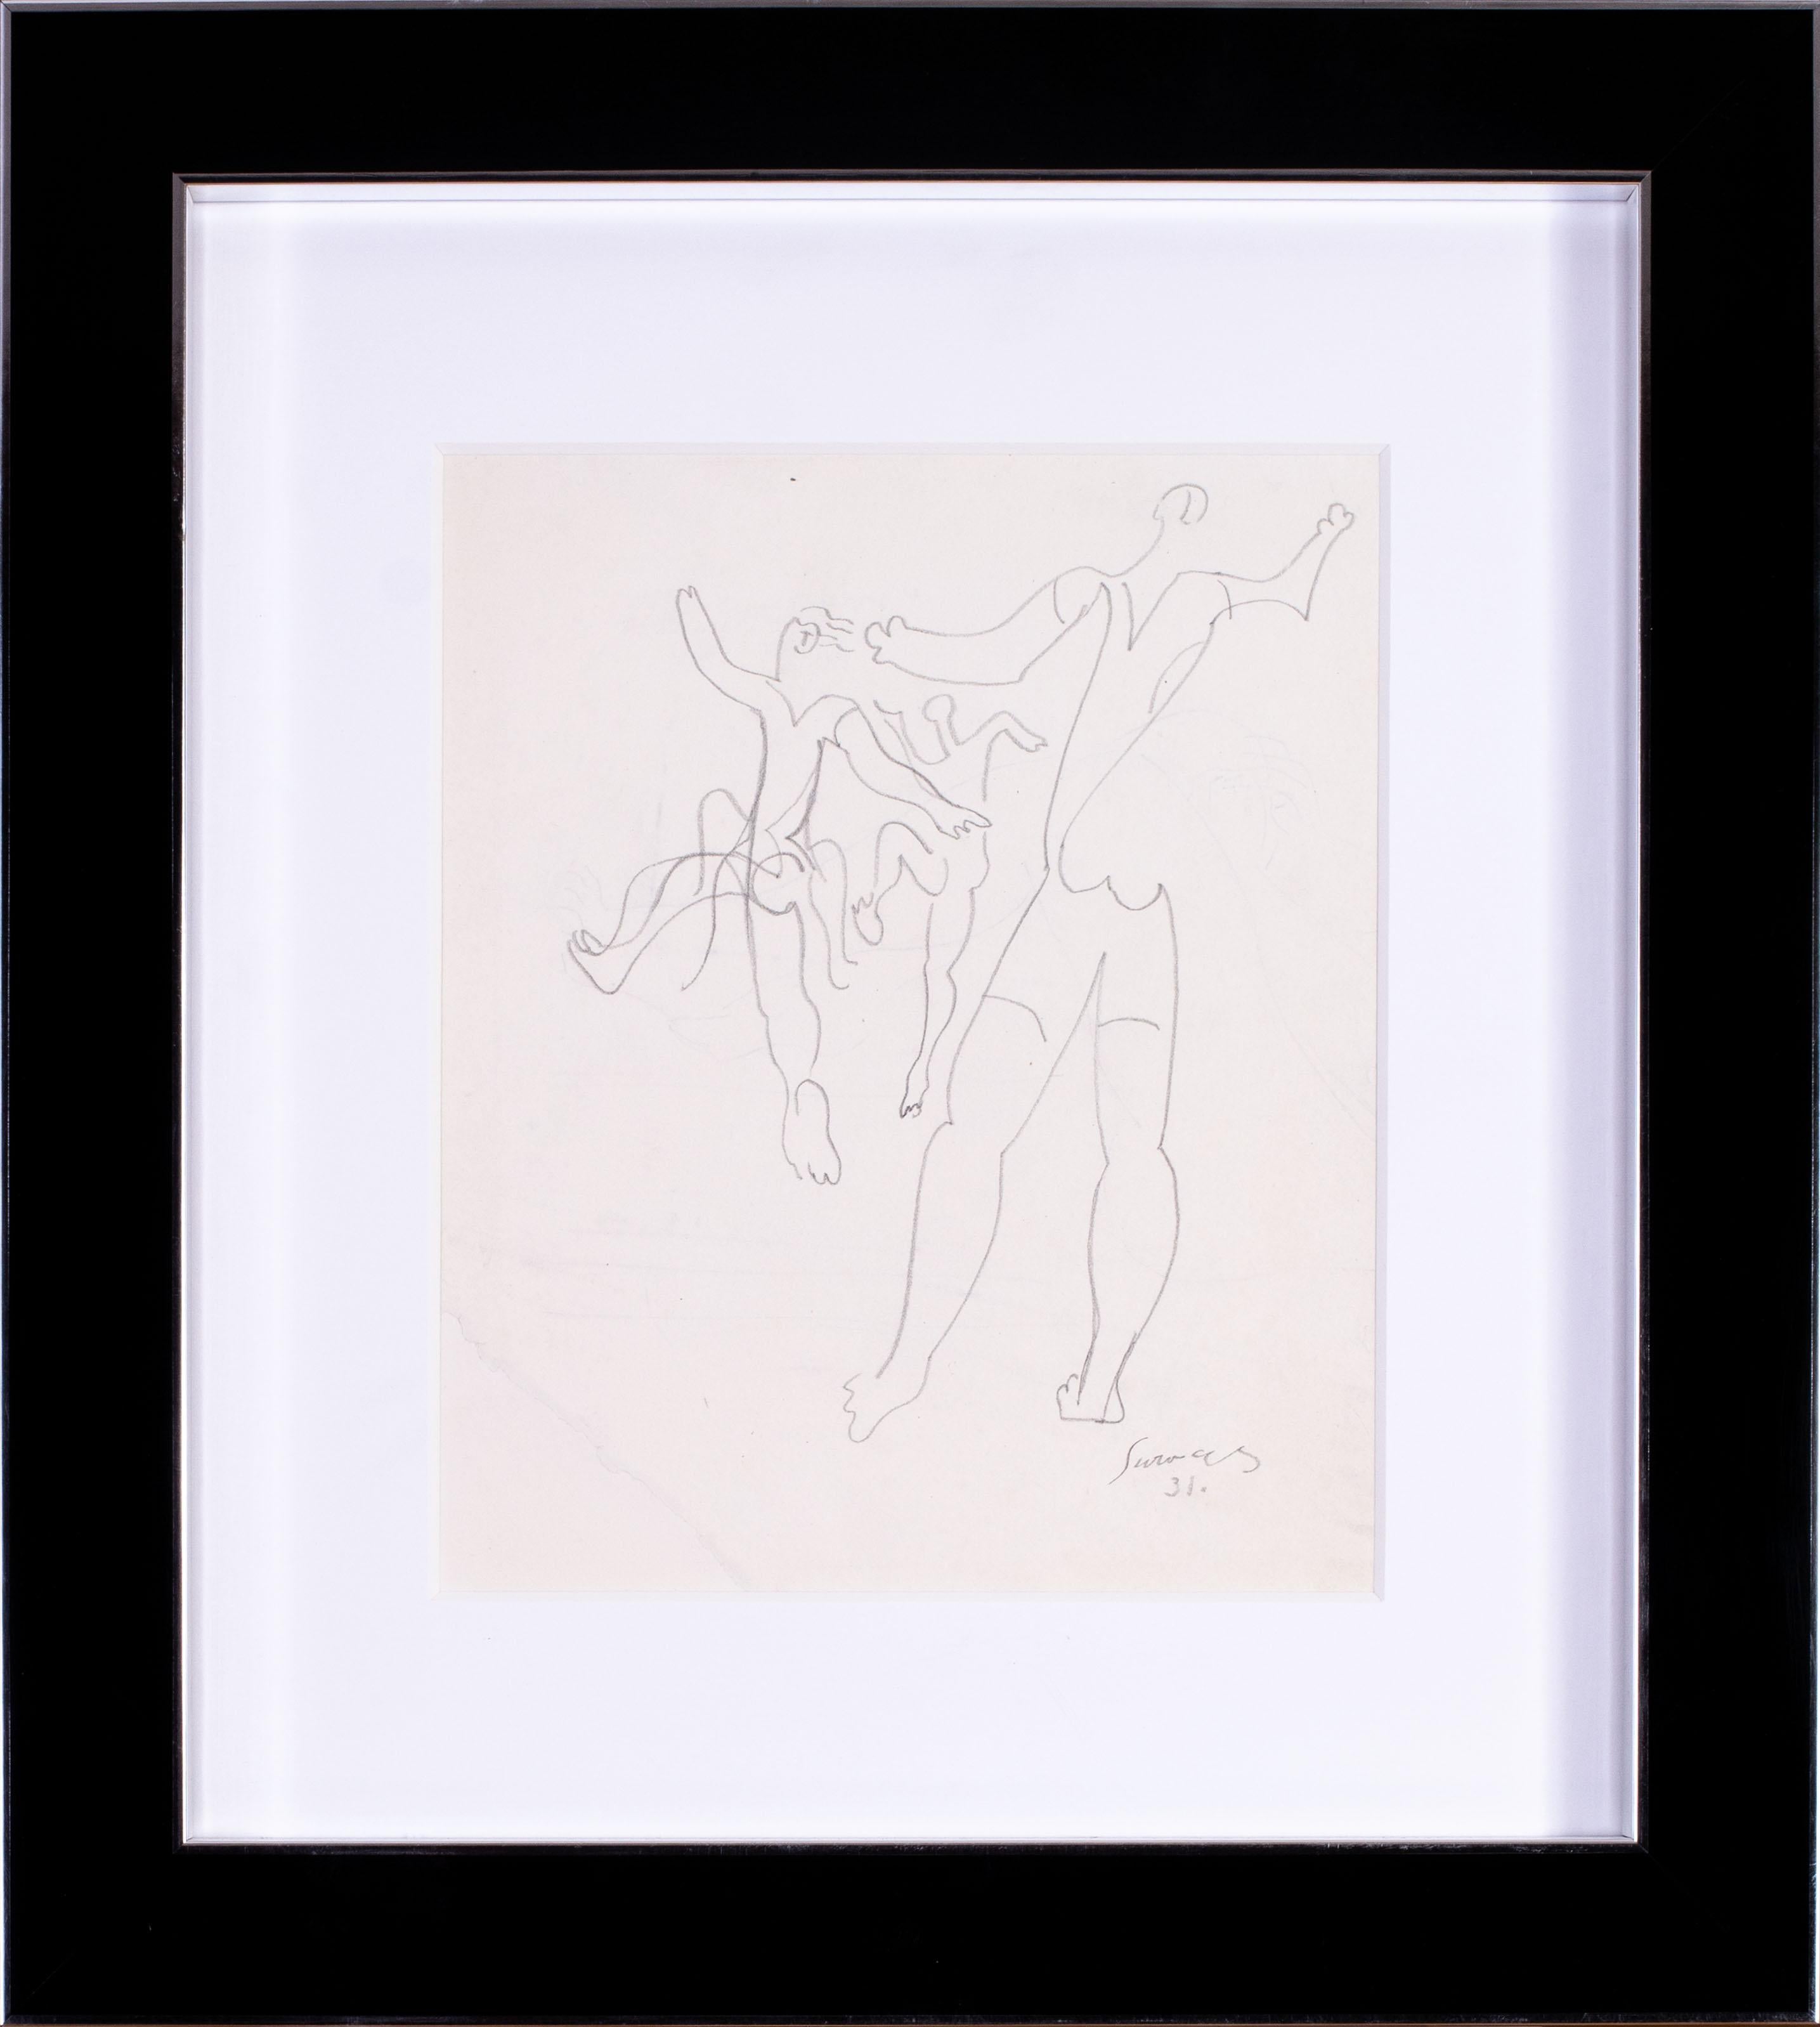 Leopold Survage (Französisch / Finnisch 1879- 1968)
Die Tänzerinnen
Signiert und datiert 'Survage / 31' (unten rechts)
Bleistift auf Papier
10.1/2 x 8,5/8 Zoll. (27 x 22,2 cm.)

Survage, der zu Beginn des Jahrhunderts als Mitglied der kubistischen